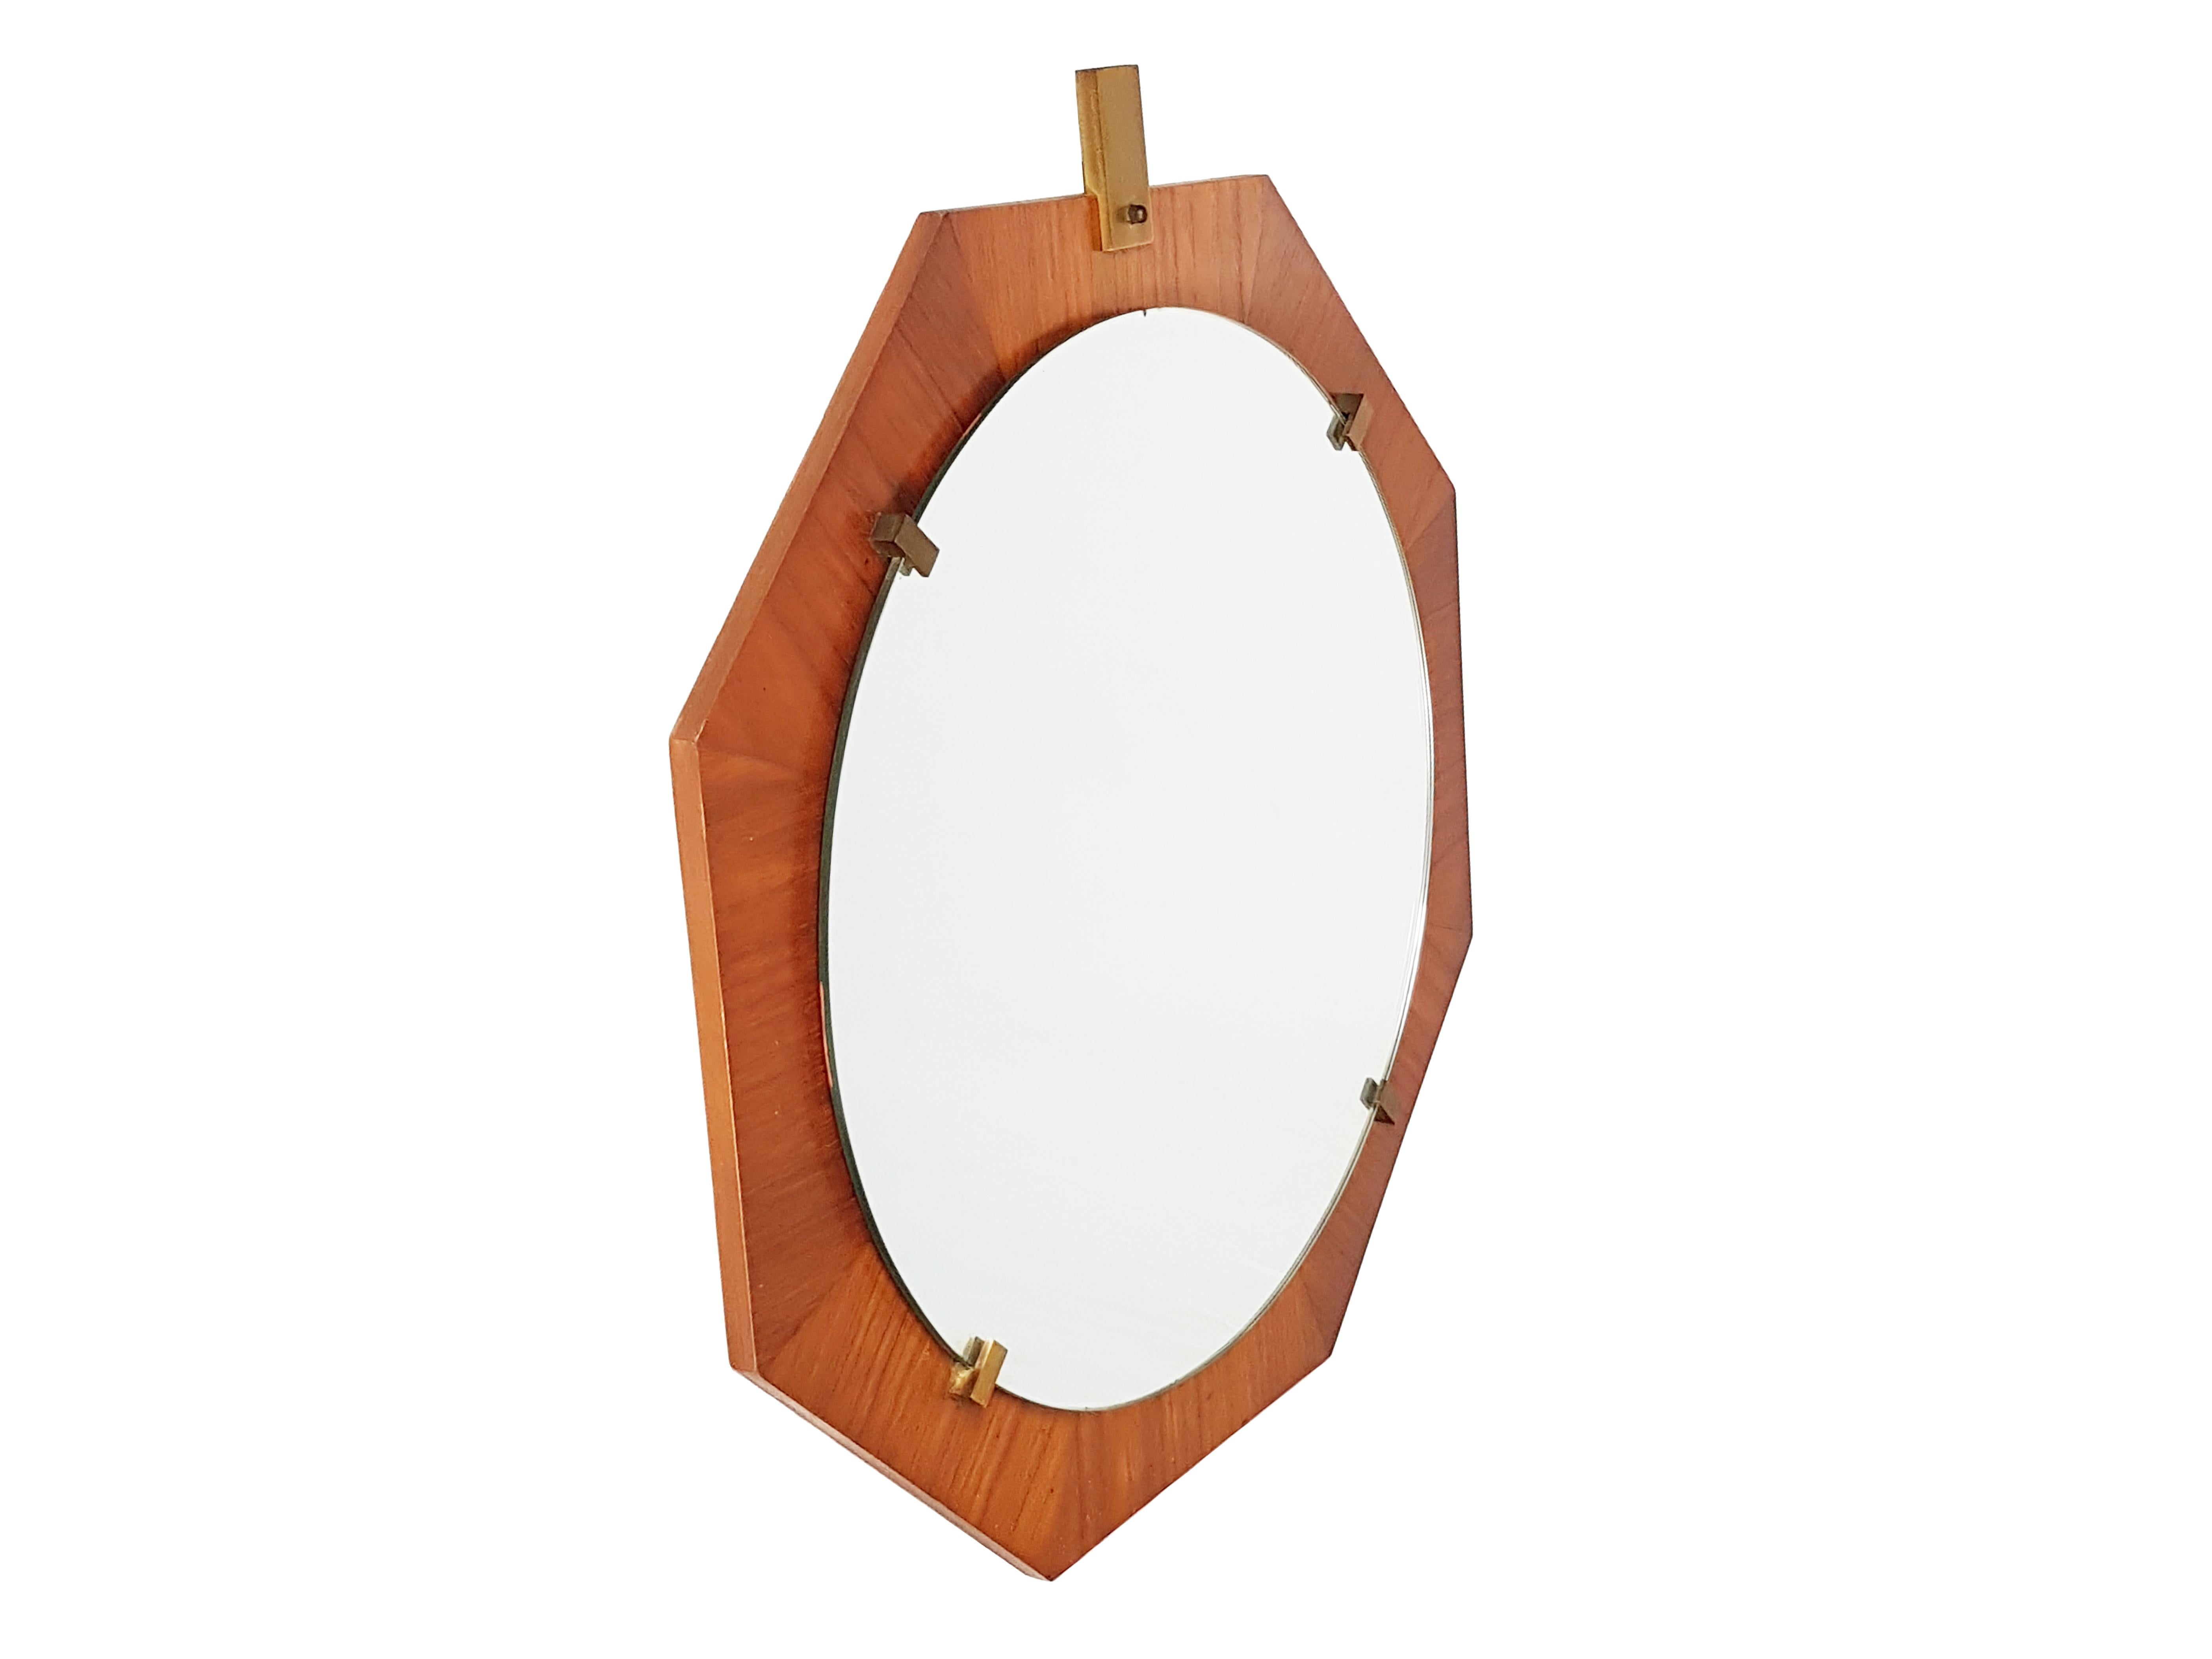 Dieser Spiegel wurde in den 1960er Jahren in Italien hergestellt. Er hat eine achteckige Form und besteht aus einer Teakholzstruktur mit Messinghalterungen und einem runden Spiegelglas. Er befindet sich in einem sehr guten, alten Zustand.